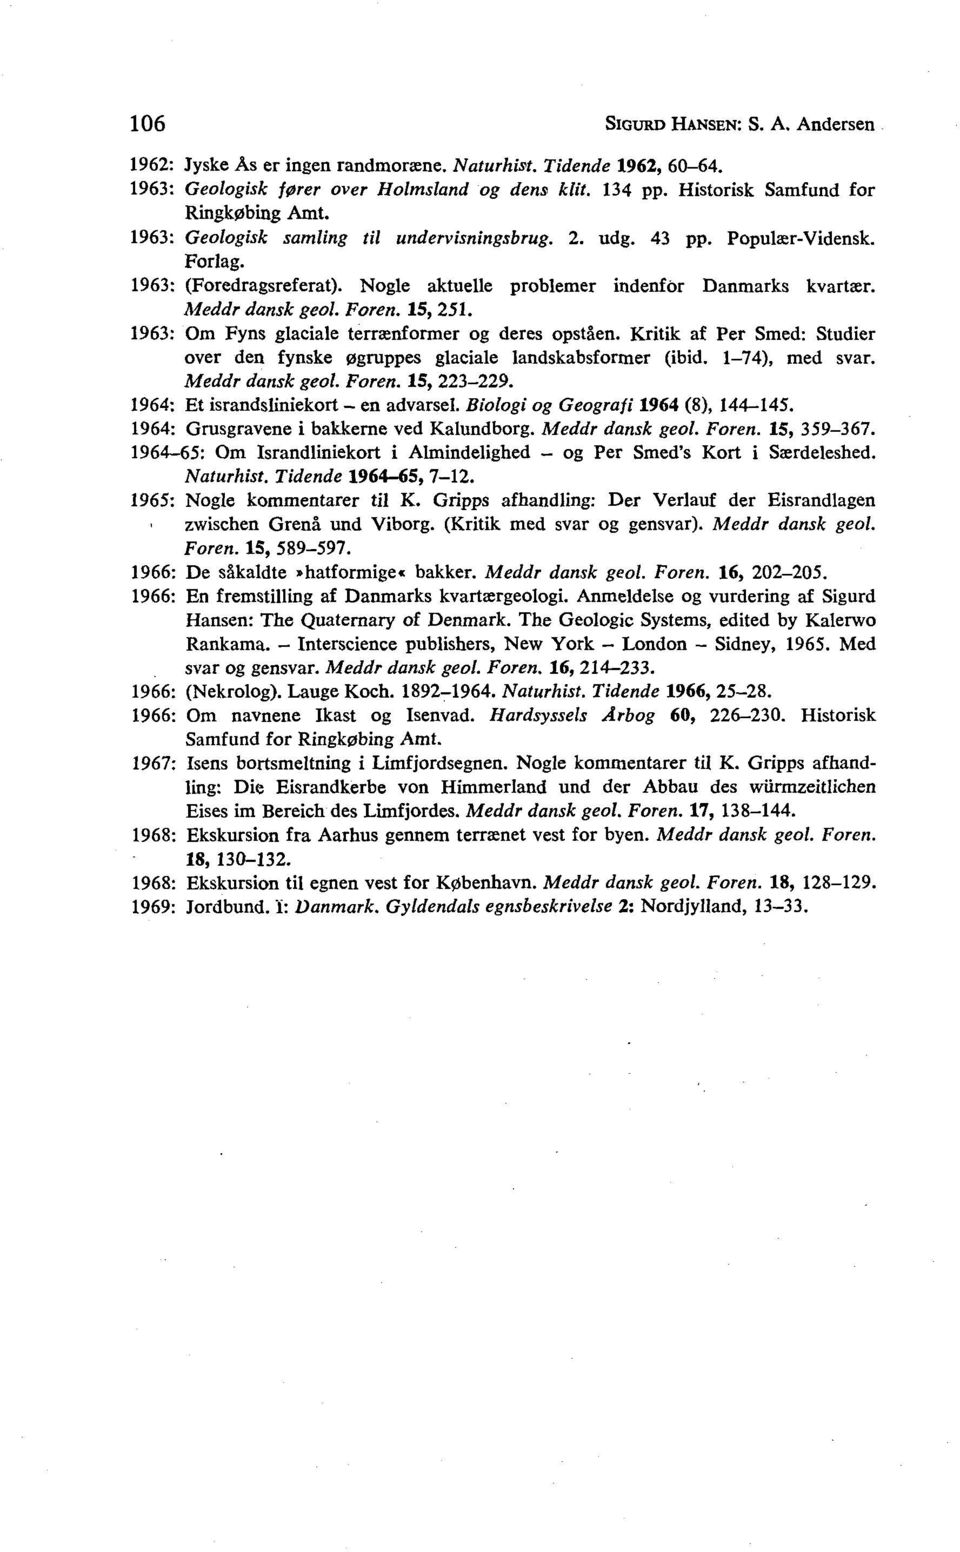 1963: Om Fyns glaciale terrænformer og deres opståen. Kritik af Per Smed: Studier over den fynske øgruppes glaciale landskabsformer (ibid. 1-74), med svar. Meddr dansk geol. Foren. 15, 223-229.